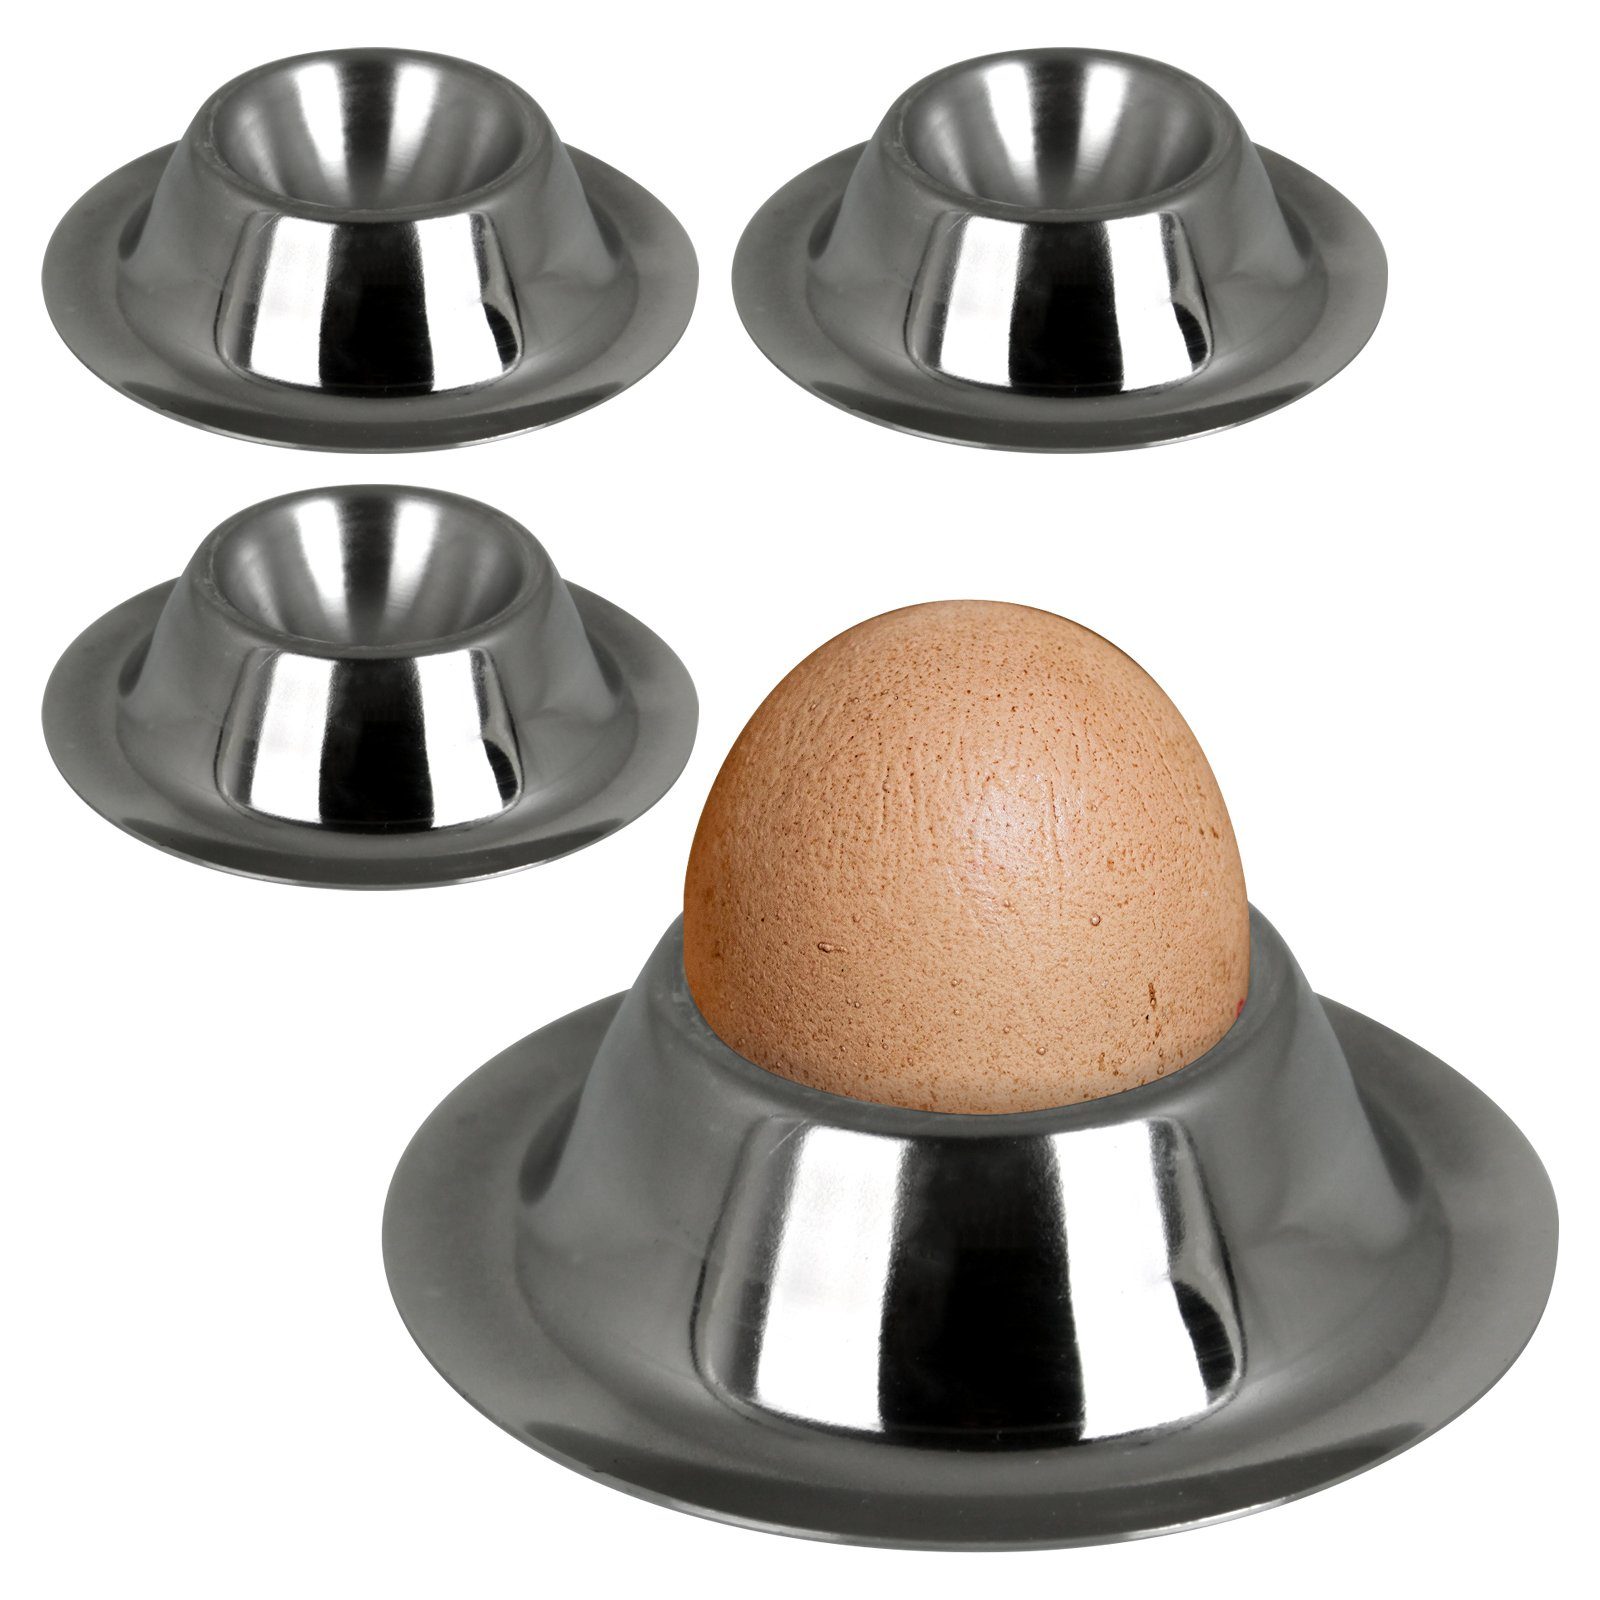 Ständer (4er Stück, Koopman Becher Eibecher Edelstahl Frühstücksset Eier Eierbecher Eierständerset Frühstücksgeschirr Set), 4 Eierständer Eihalter